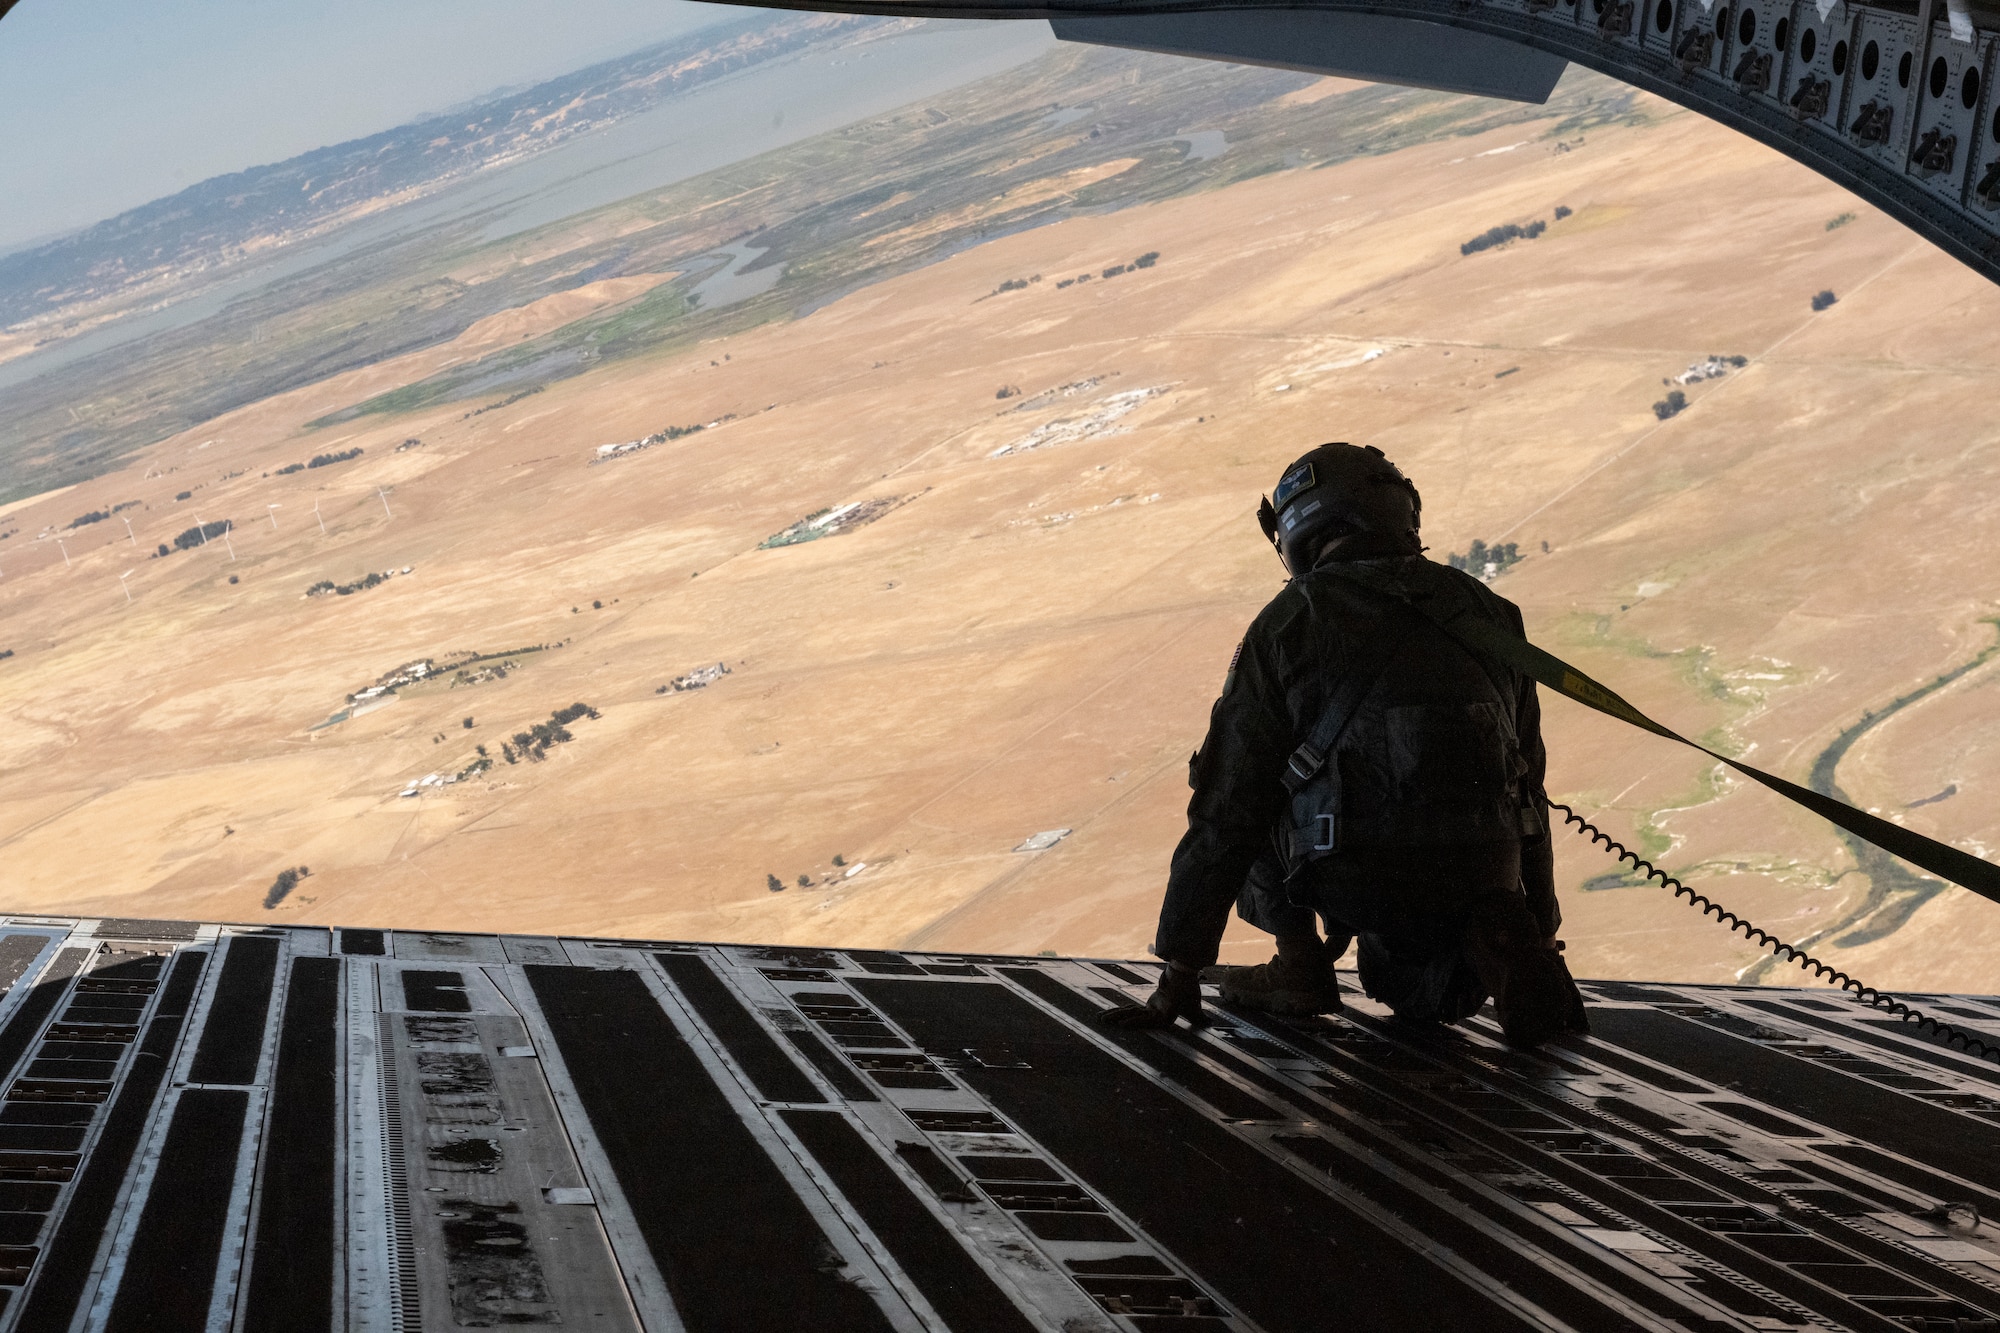 An airman looks over an aircraft ramp in flight